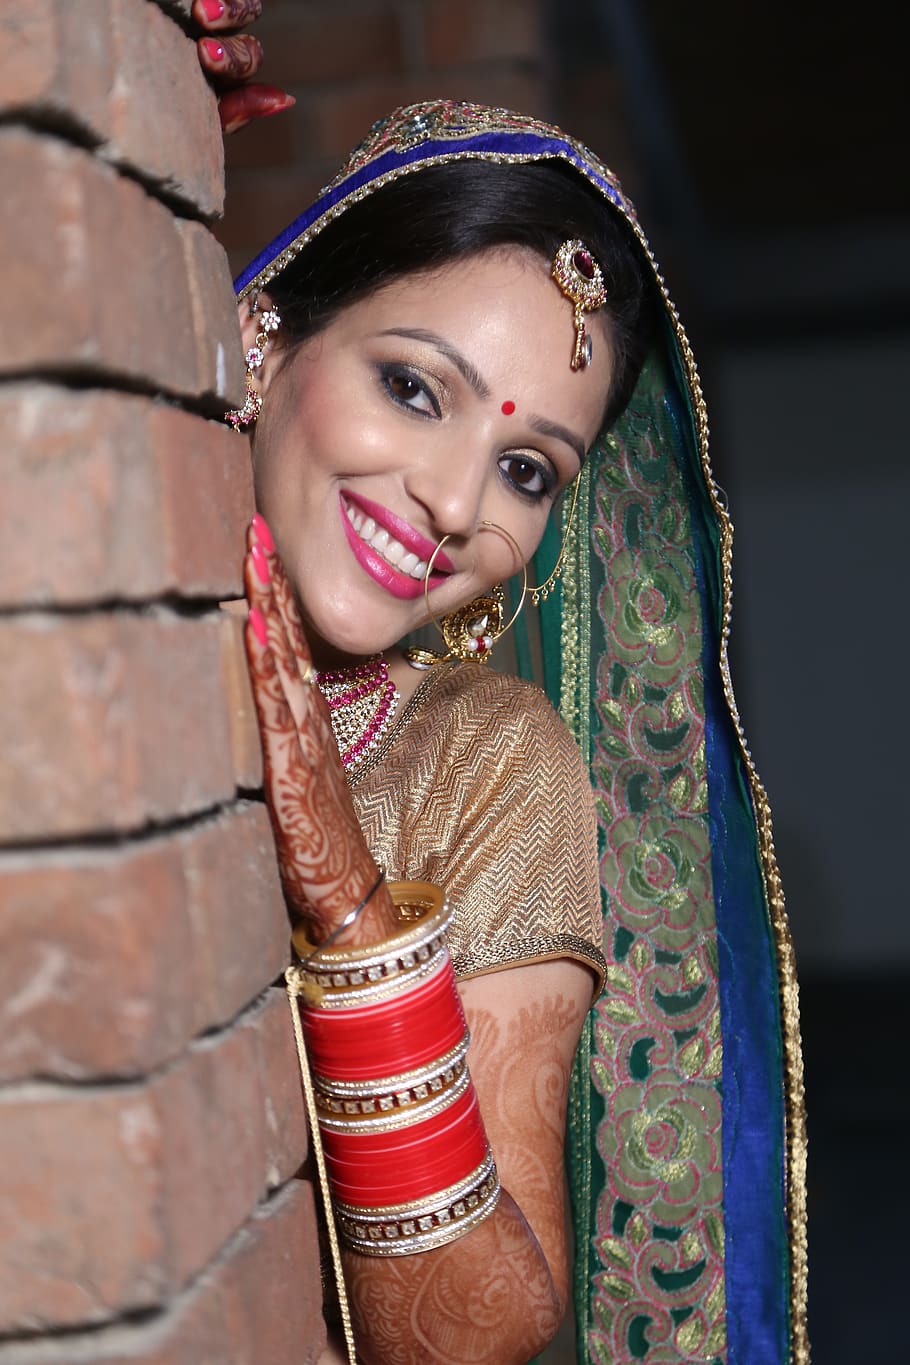 novia, boda, matrimonio, indio, ropa tradicional, sonriente, adulto joven, retrato, una persona, mirando a cámara